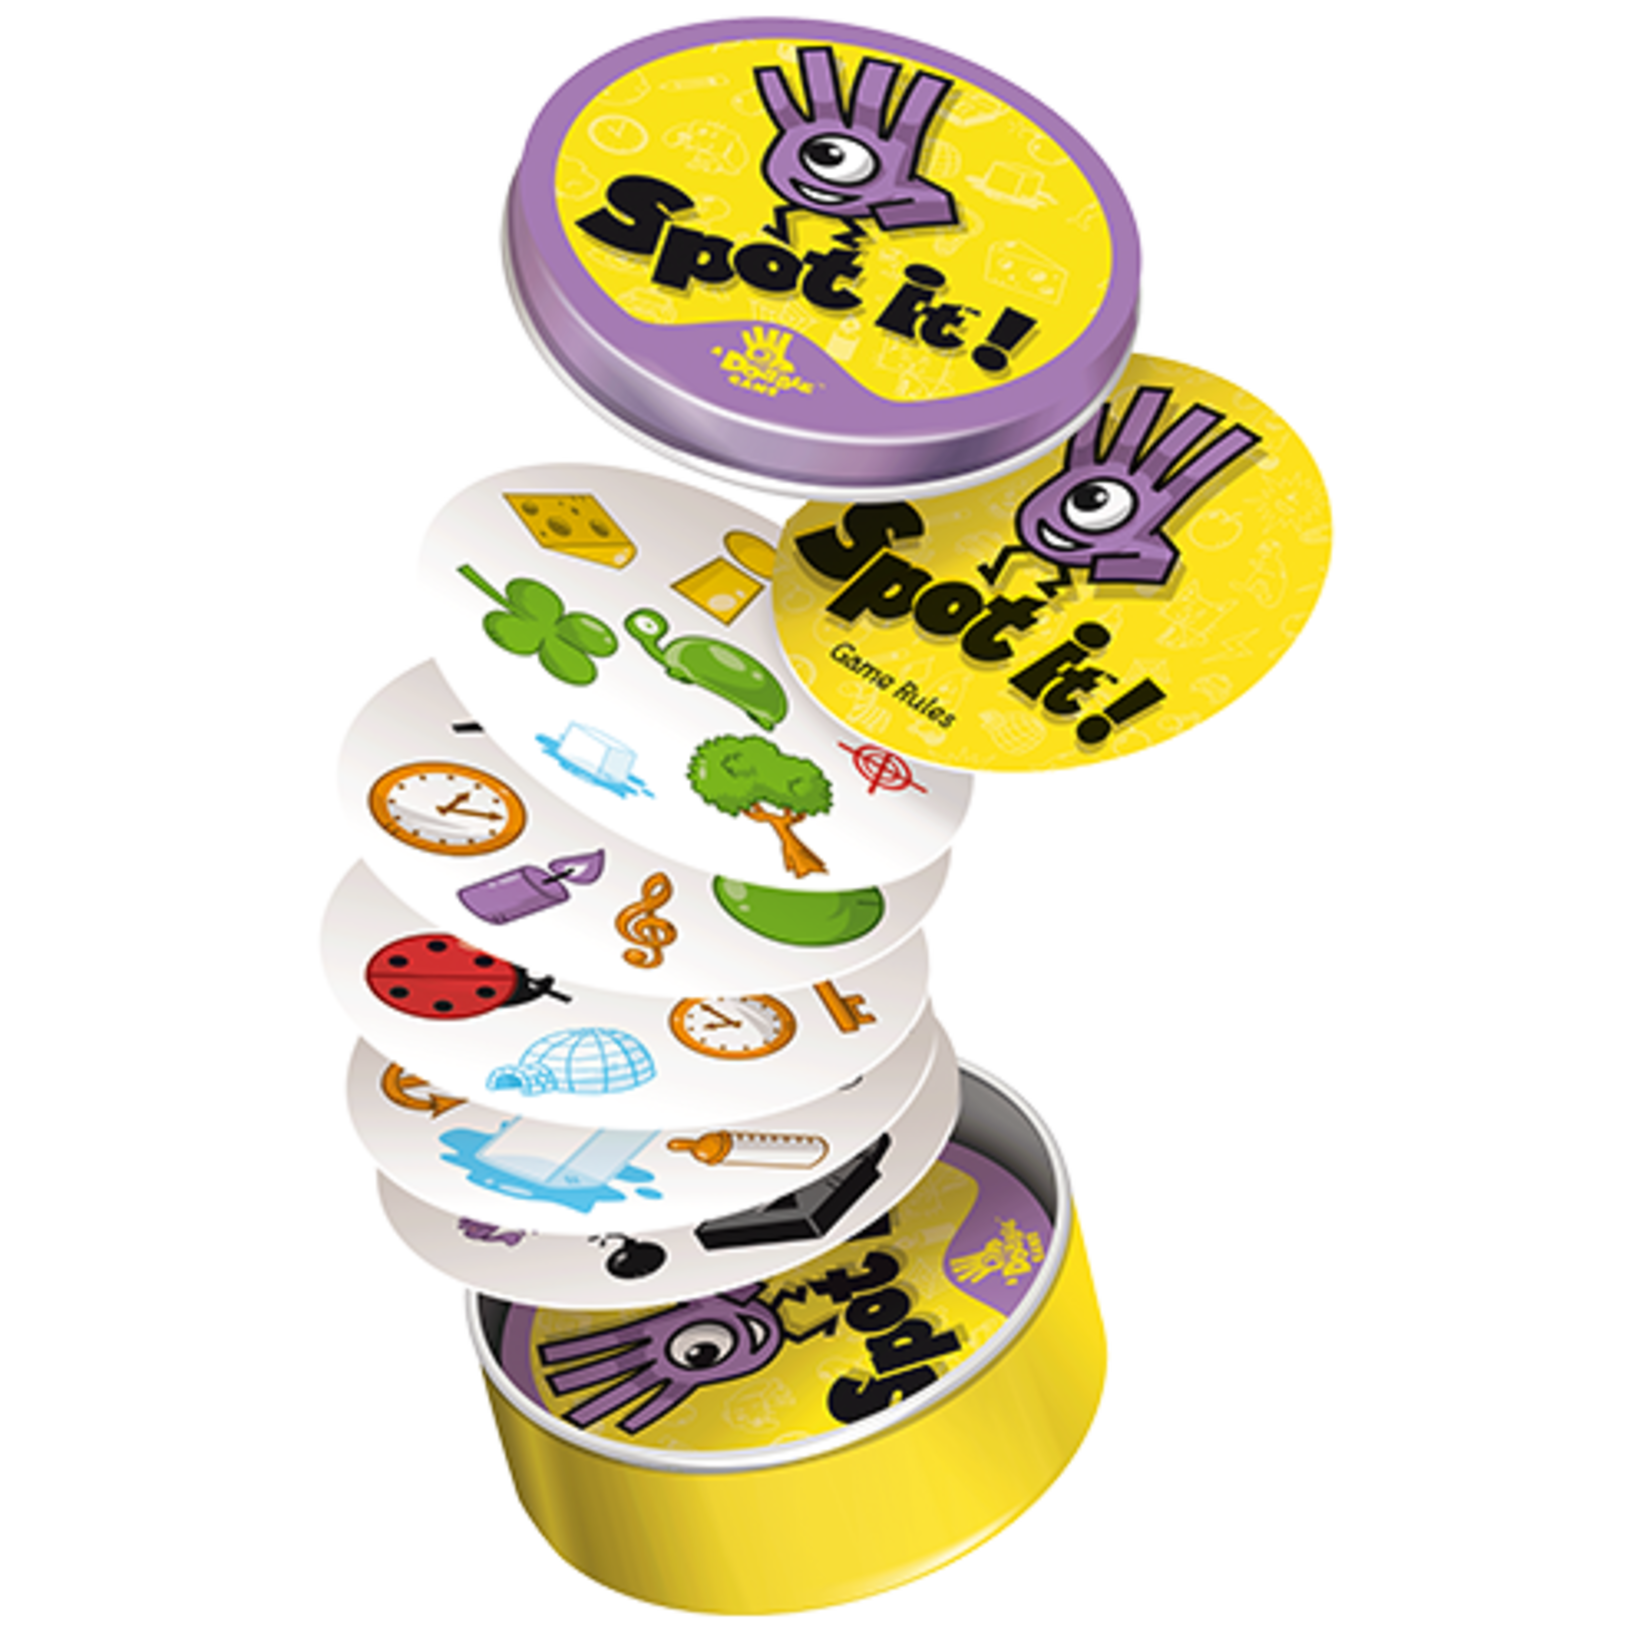 Zygomatic Dobble Kids Board Game Multicolor